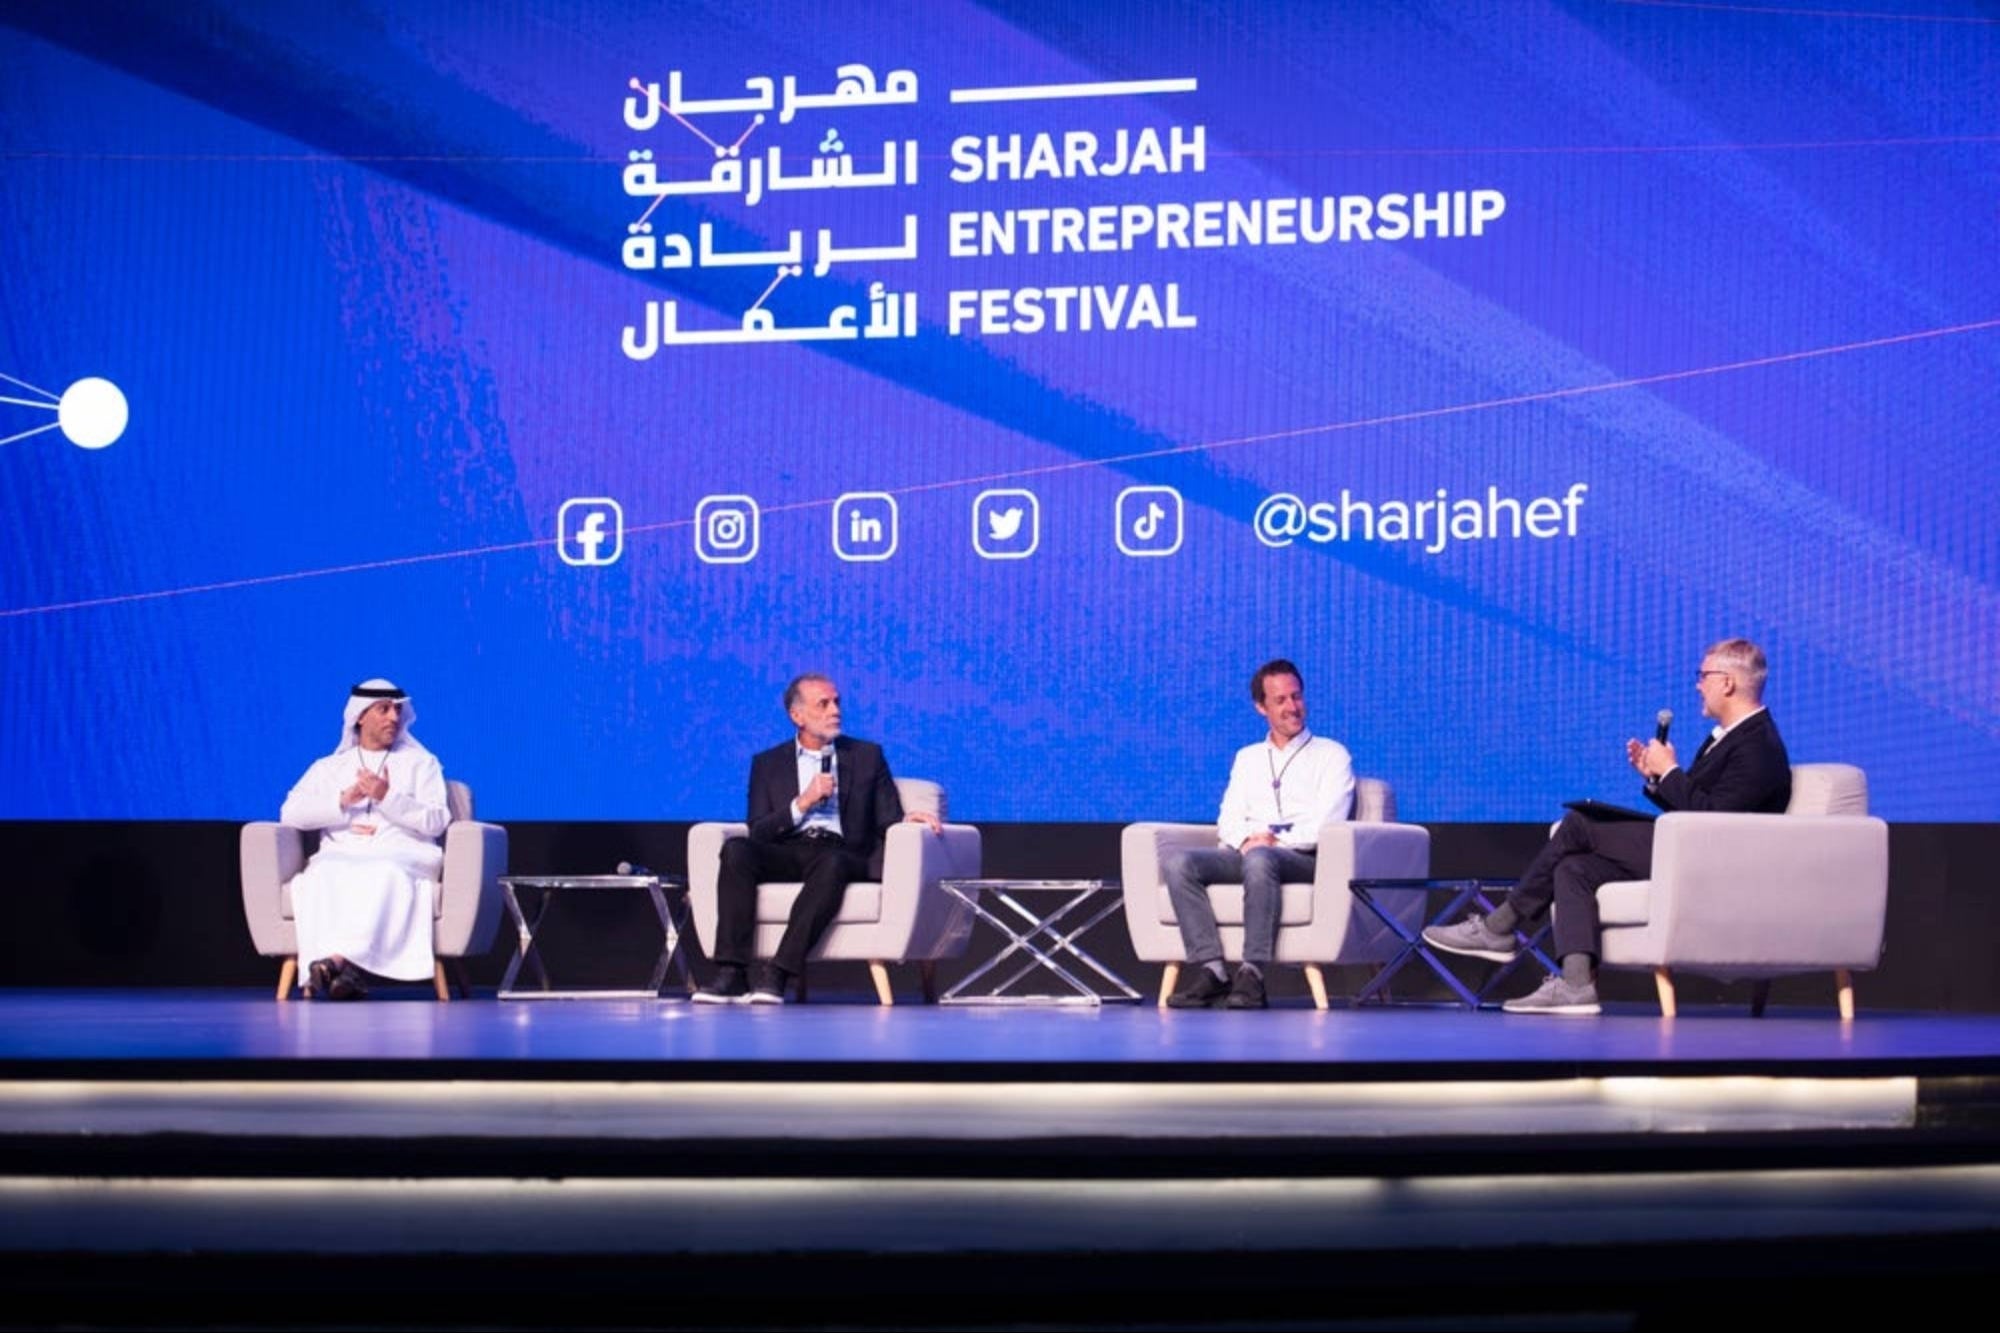 Steven Bartlett, Mo Gawdat, Ahmed El Ghandour Among 130+ Speakers Headlining This Year's Sharjah Entrepreneurship Festival On December 17-18, 2022